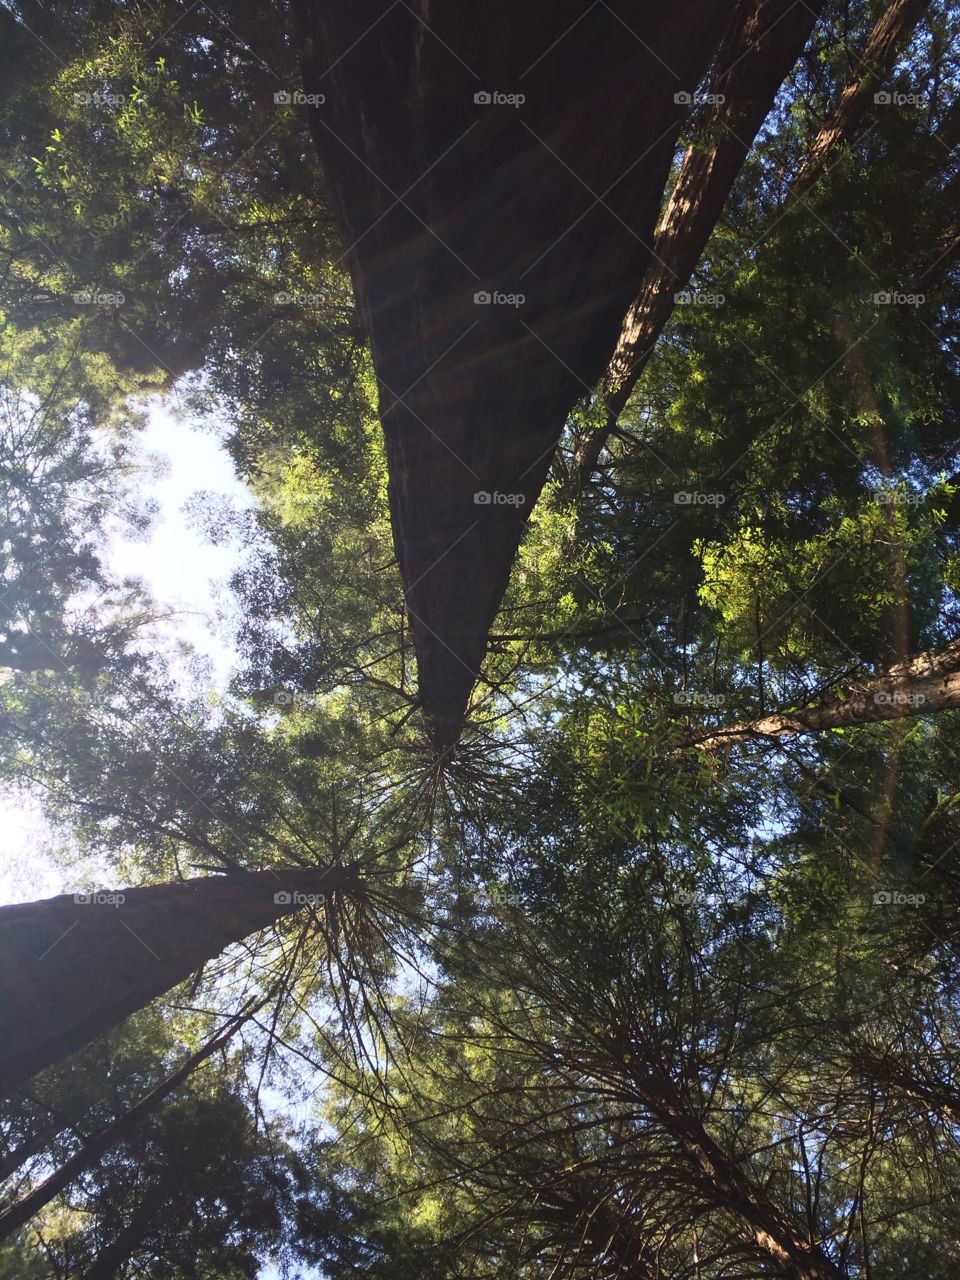 Muir Woods in the tree tops